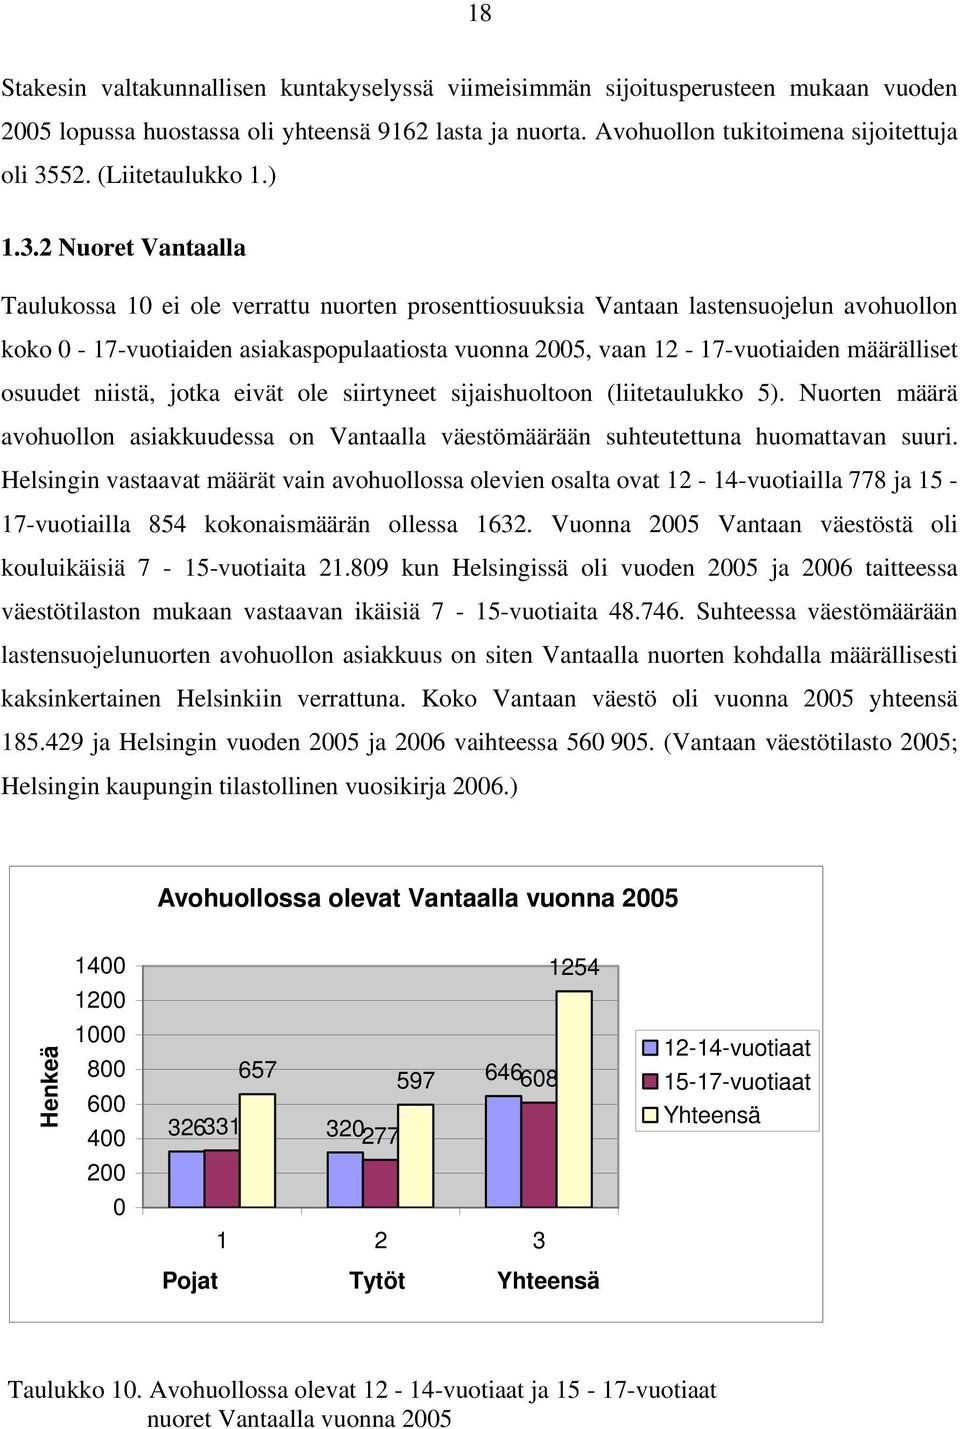 2 Nuoret Vantaalla Taulukossa 10 ei ole verrattu nuorten prosenttiosuuksia Vantaan lastensuojelun avohuollon koko 0-17-vuotiaiden asiakaspopulaatiosta vuonna 2005, vaan 12-17-vuotiaiden määrälliset